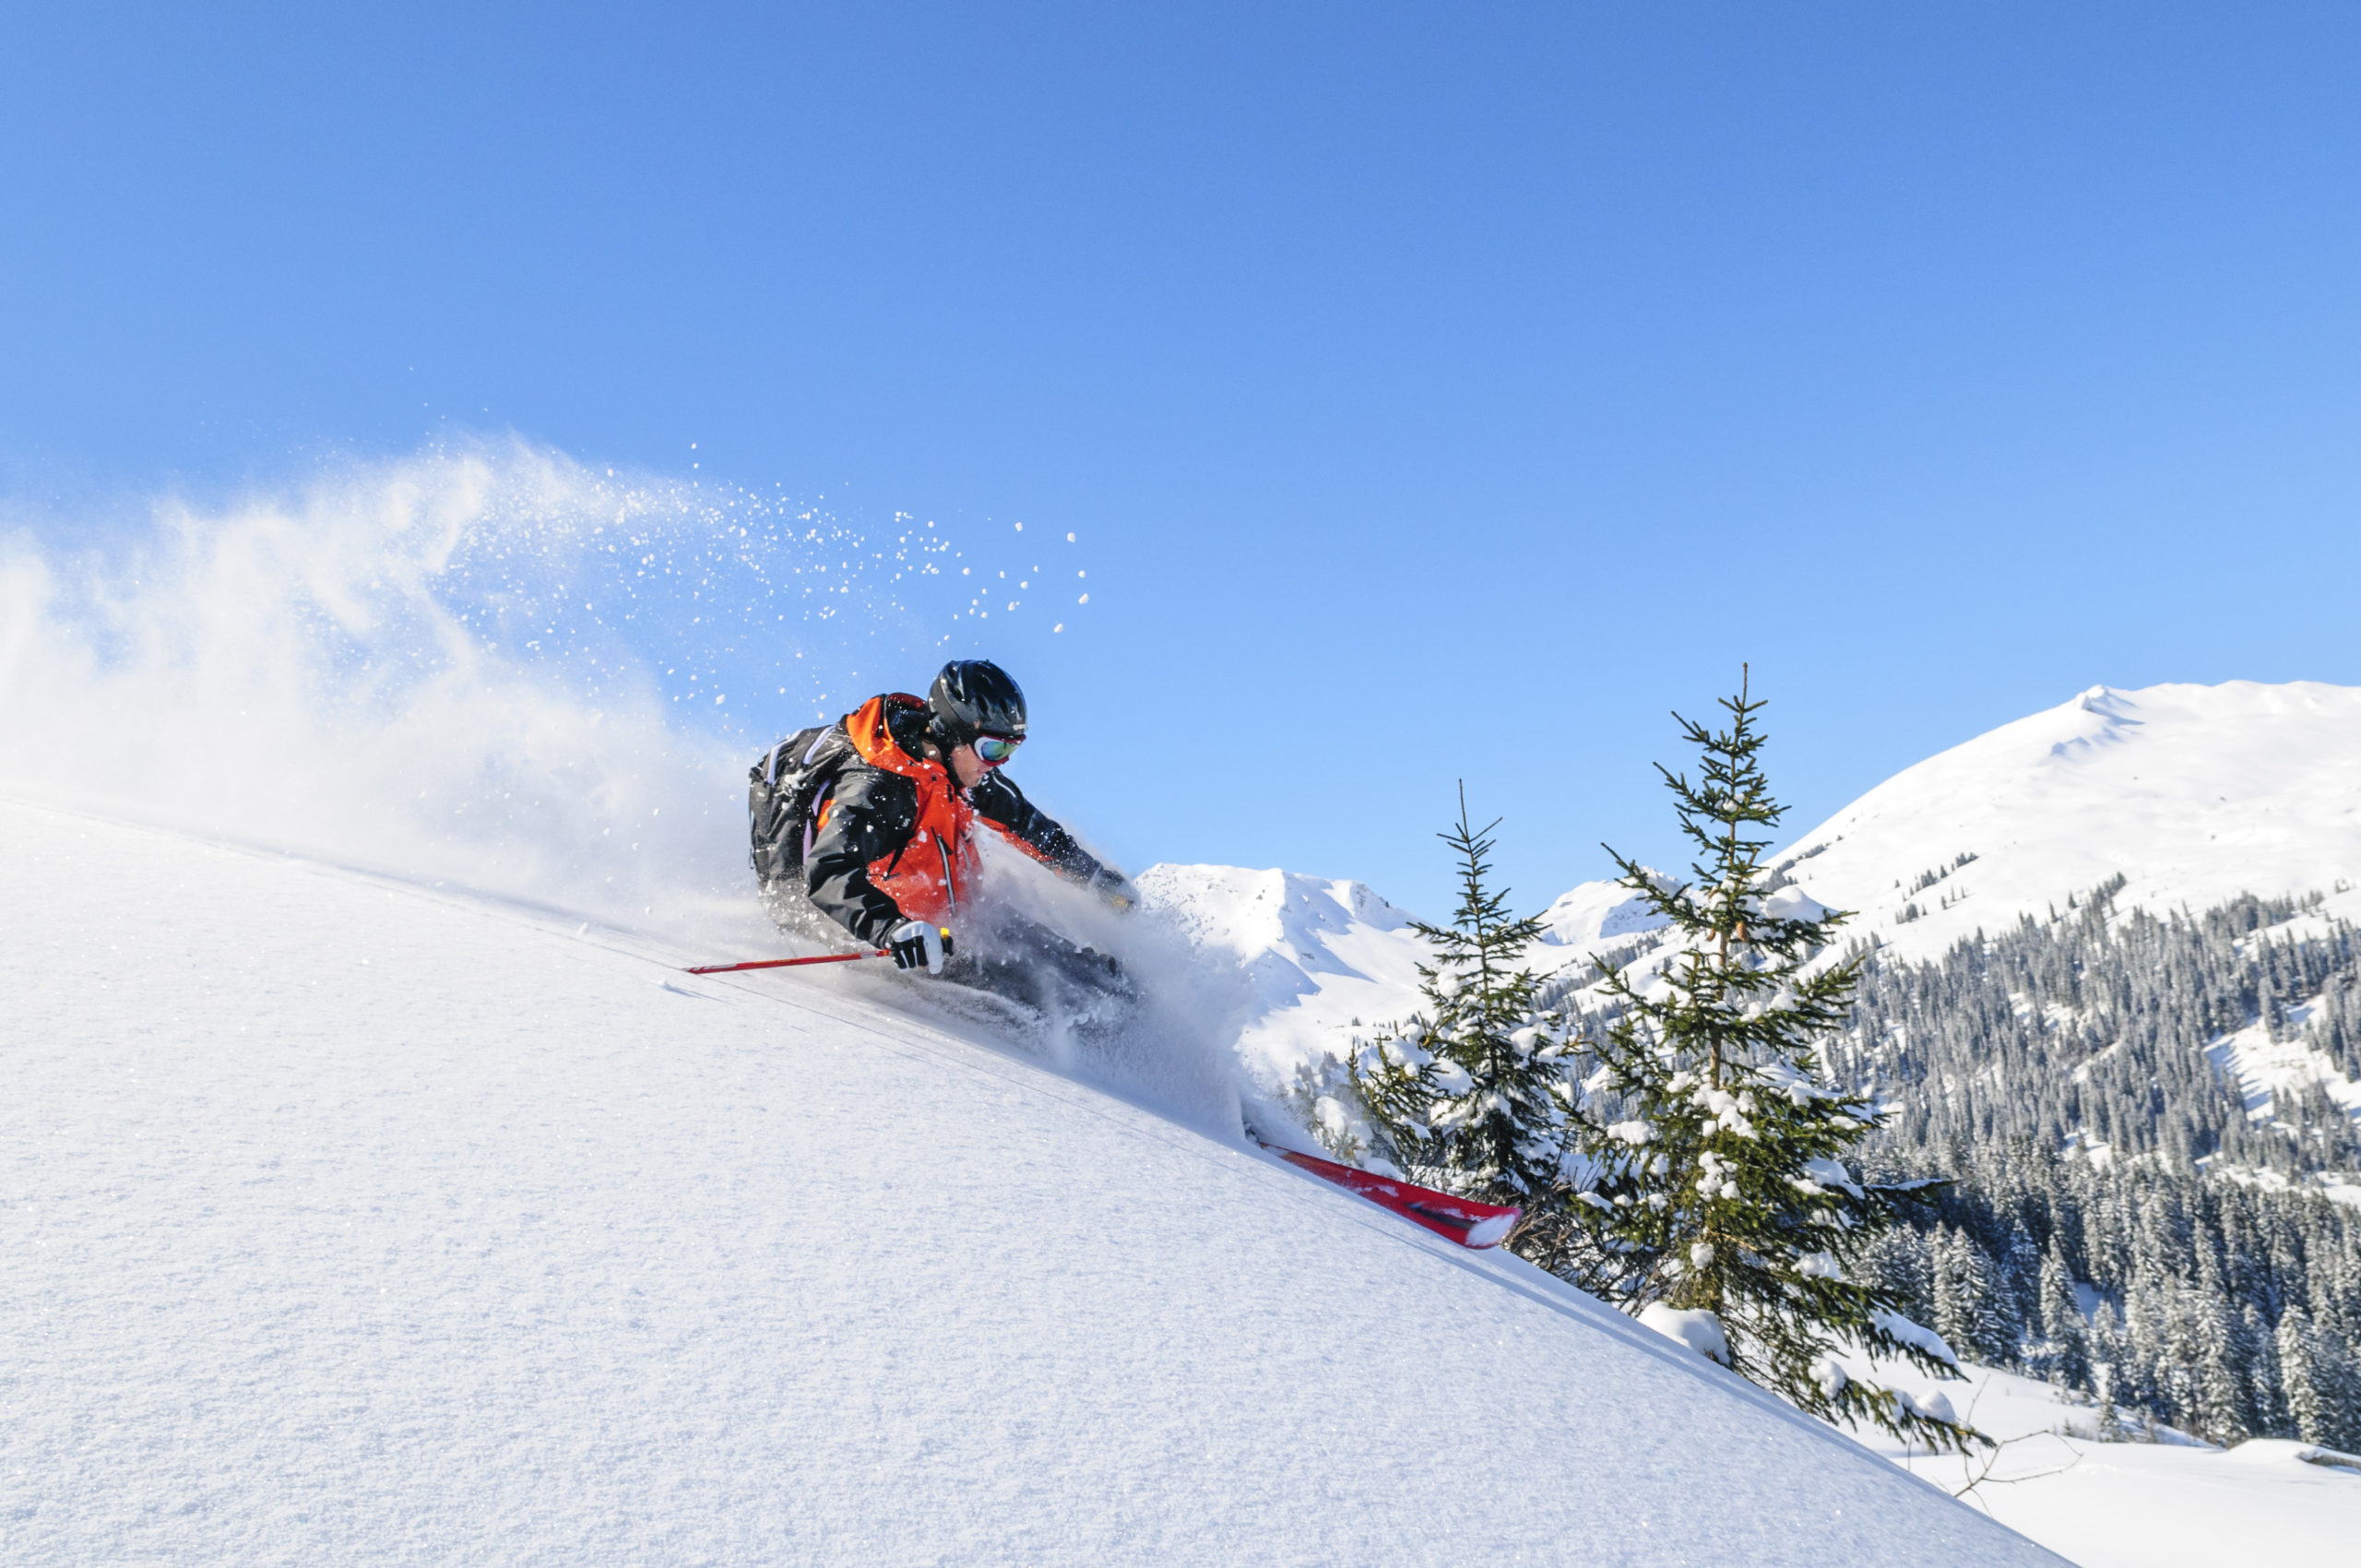 IKON Ski Pass info for 23/24 season